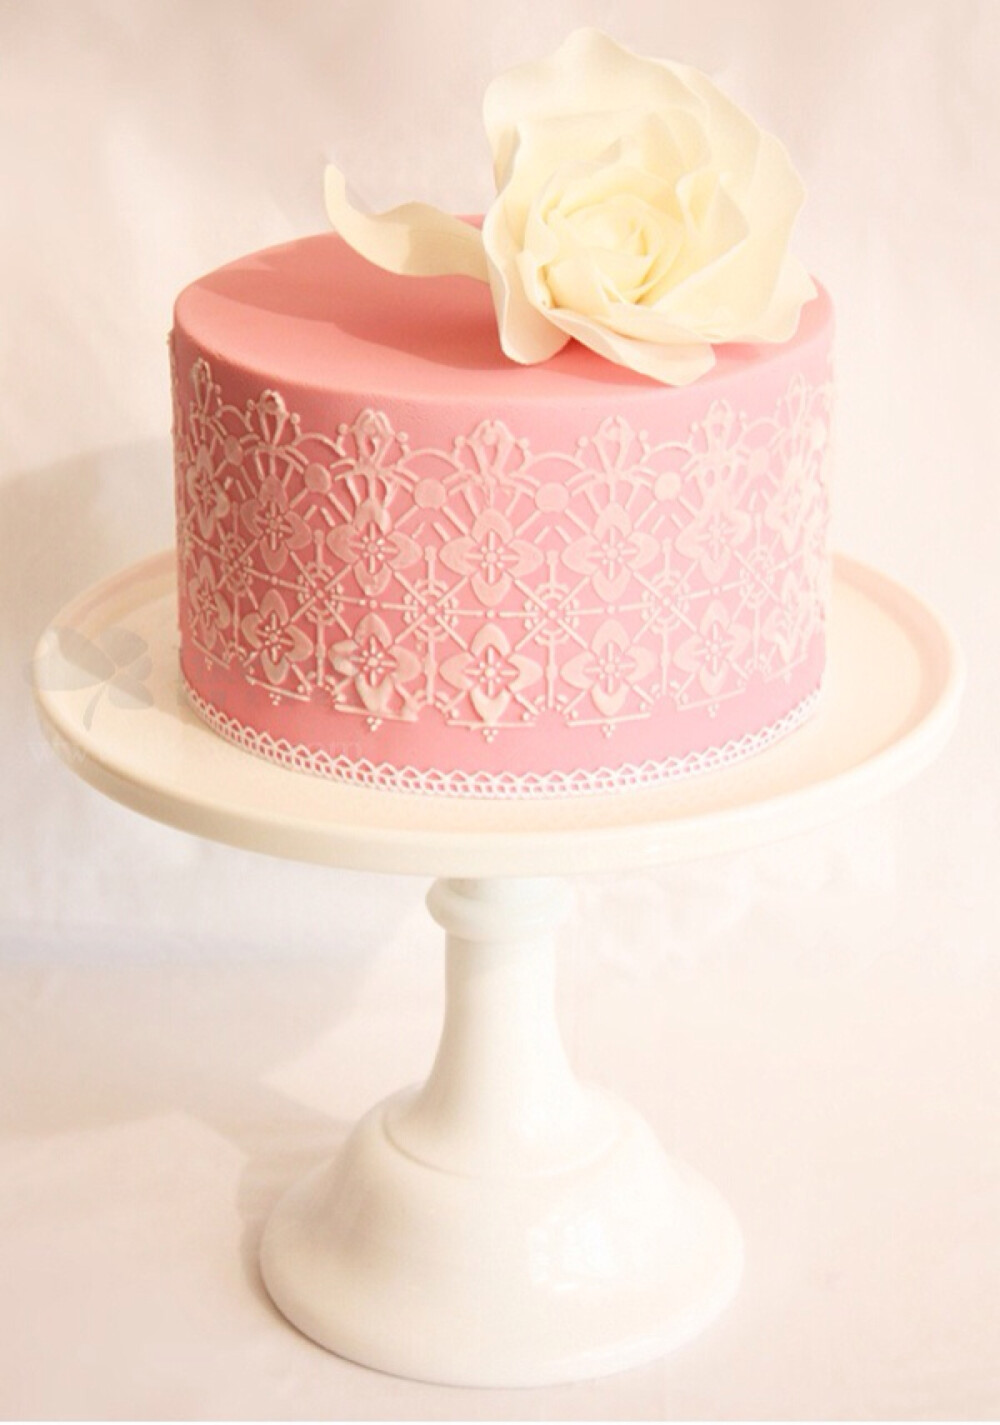 柔美高雅的蕾丝也可以与甜点创意结合,制造出高贵浪漫的婚礼蛋糕